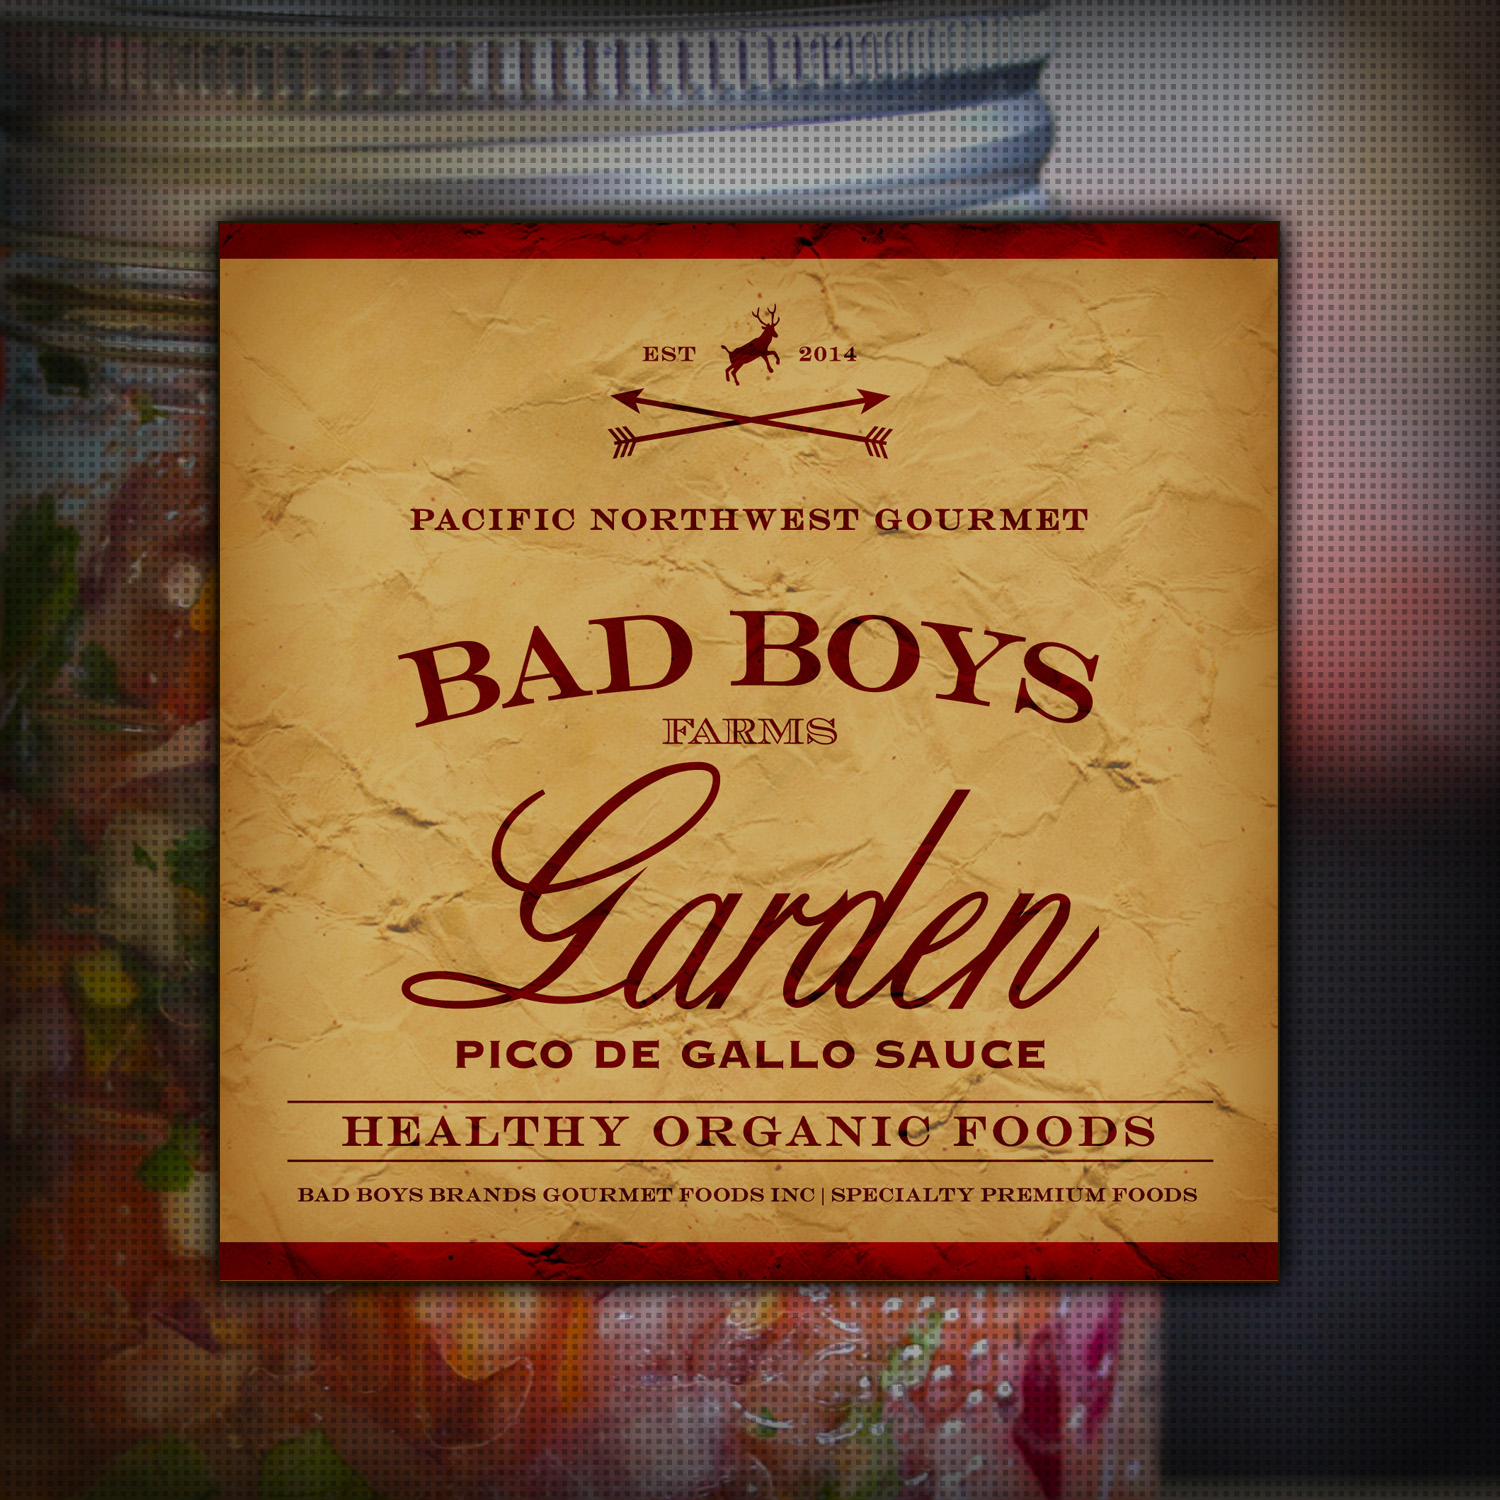 Bad Boys Garden Pico De Gallo [v3] Sauce [tm] by Graham Hnedak 24 SEPT 2014.jpg